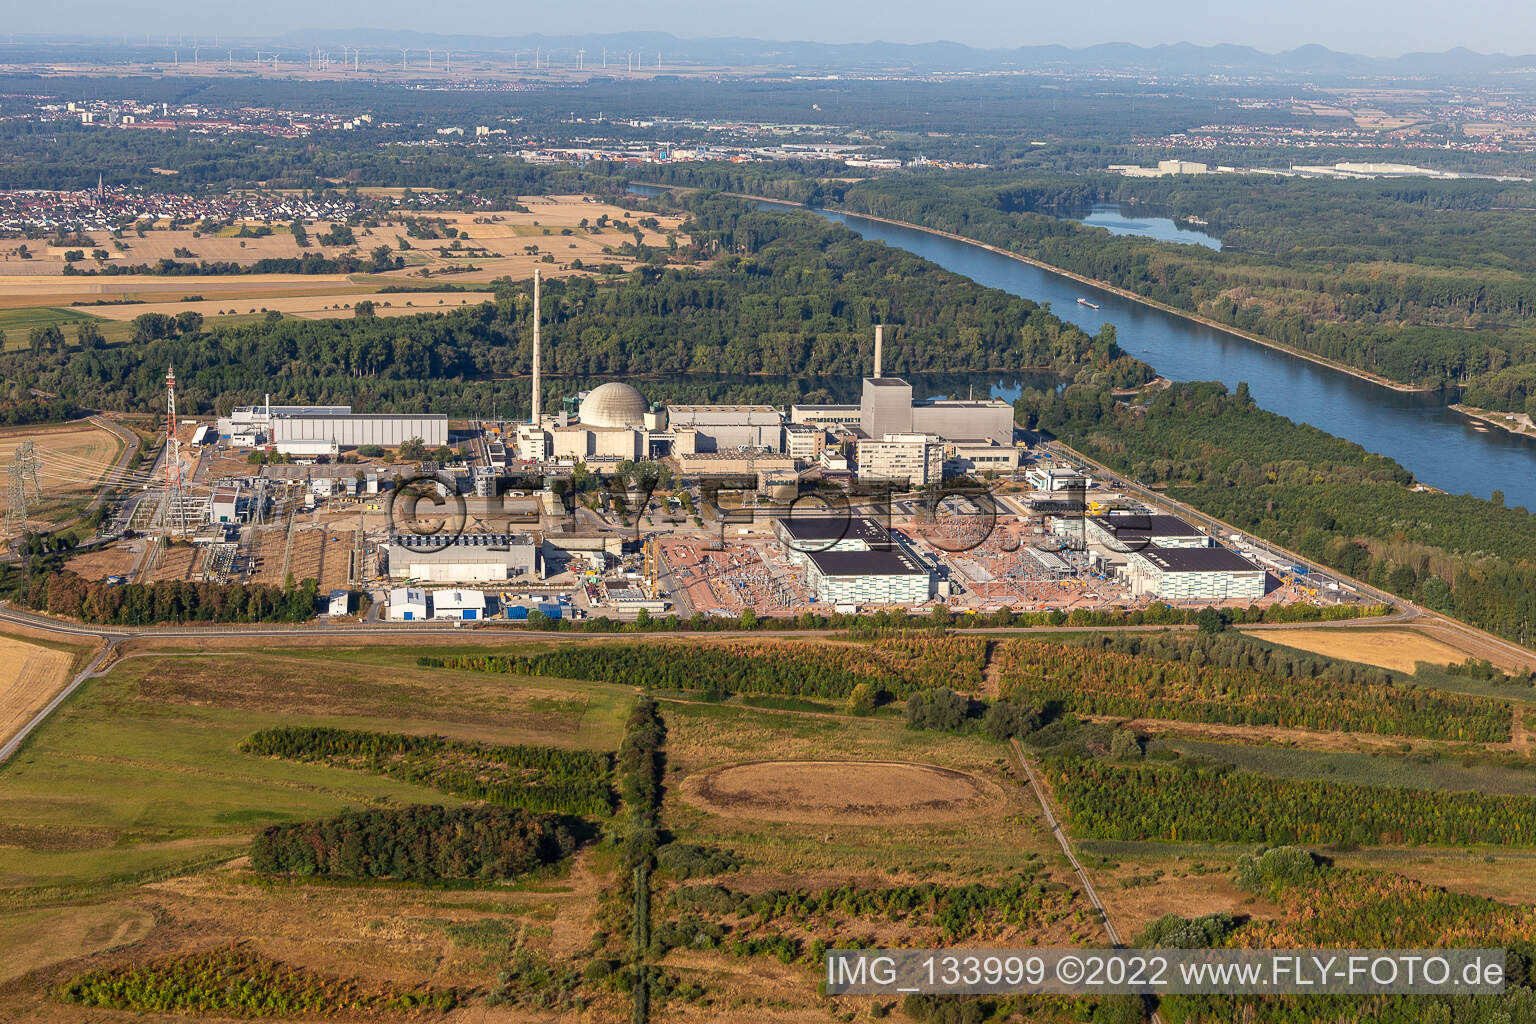 TransnetBW GmbH, sous-station à courant continu sur le site de la centrale nucléaire déclassée Philippsburg à Philippsburg dans le département Bade-Wurtemberg, Allemagne vue d'en haut